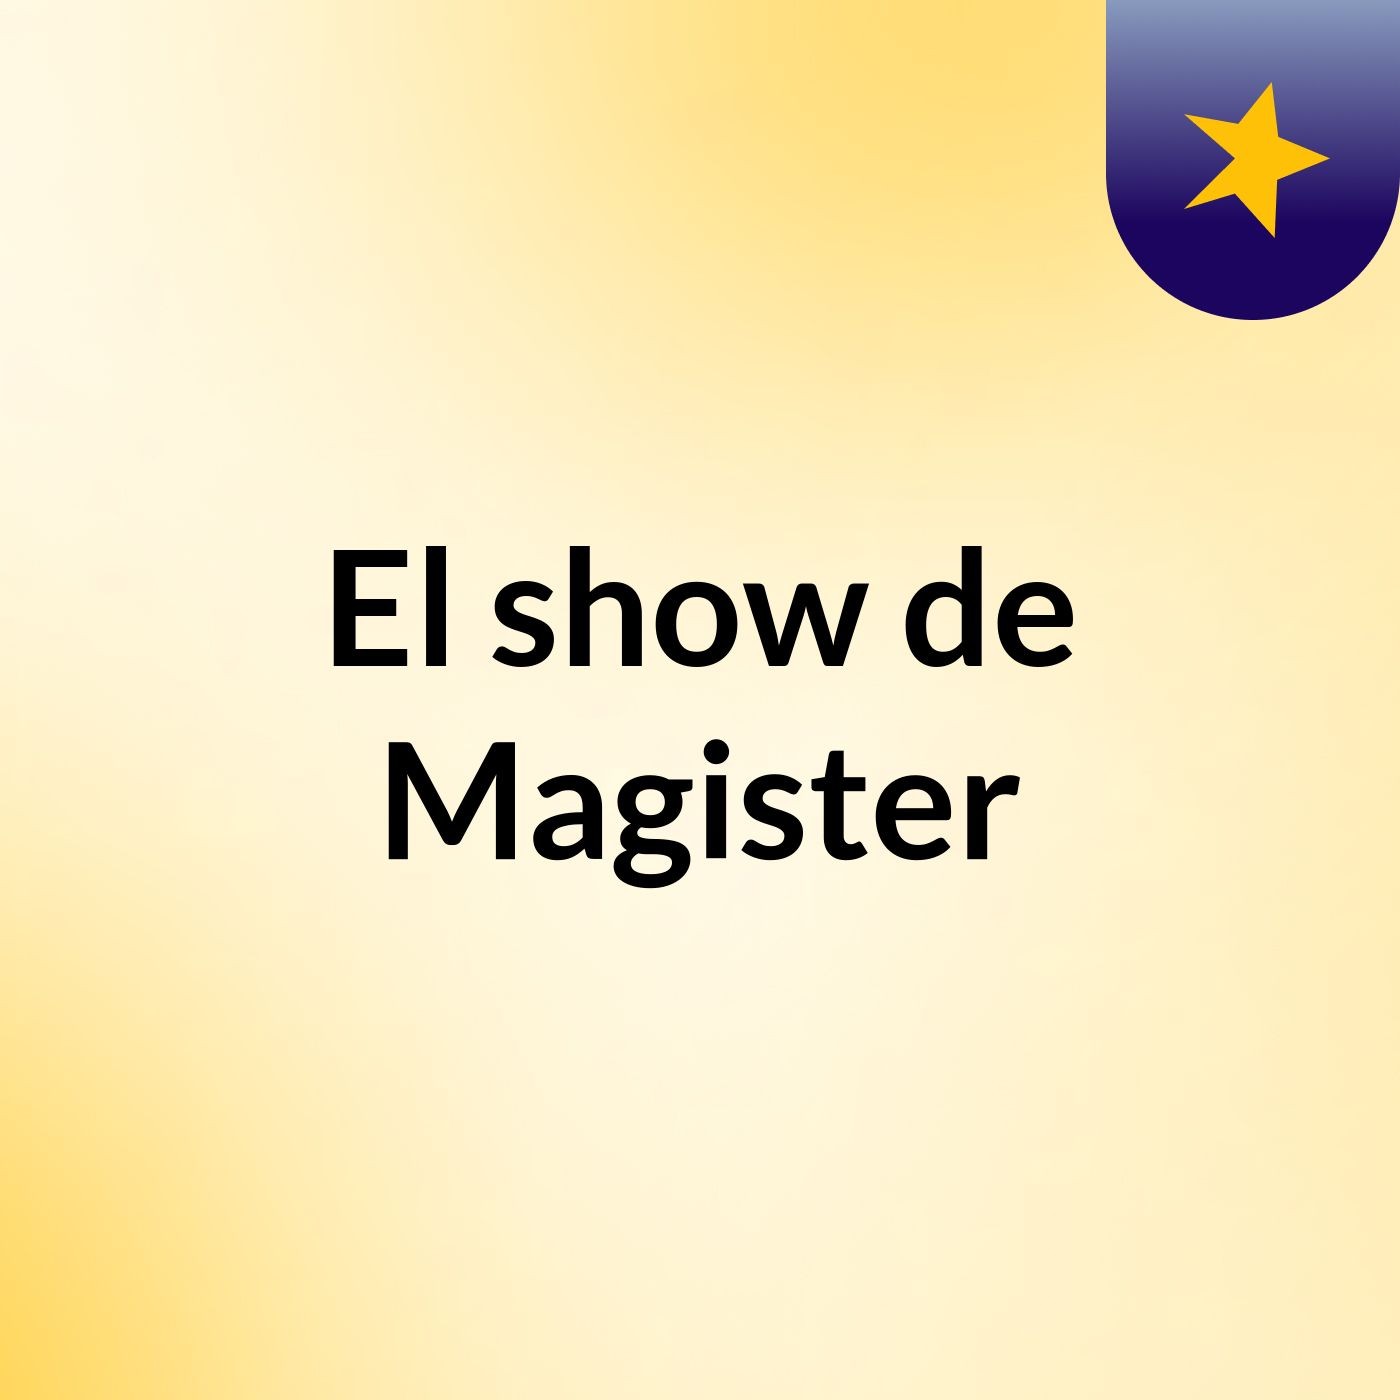 El show de Magister